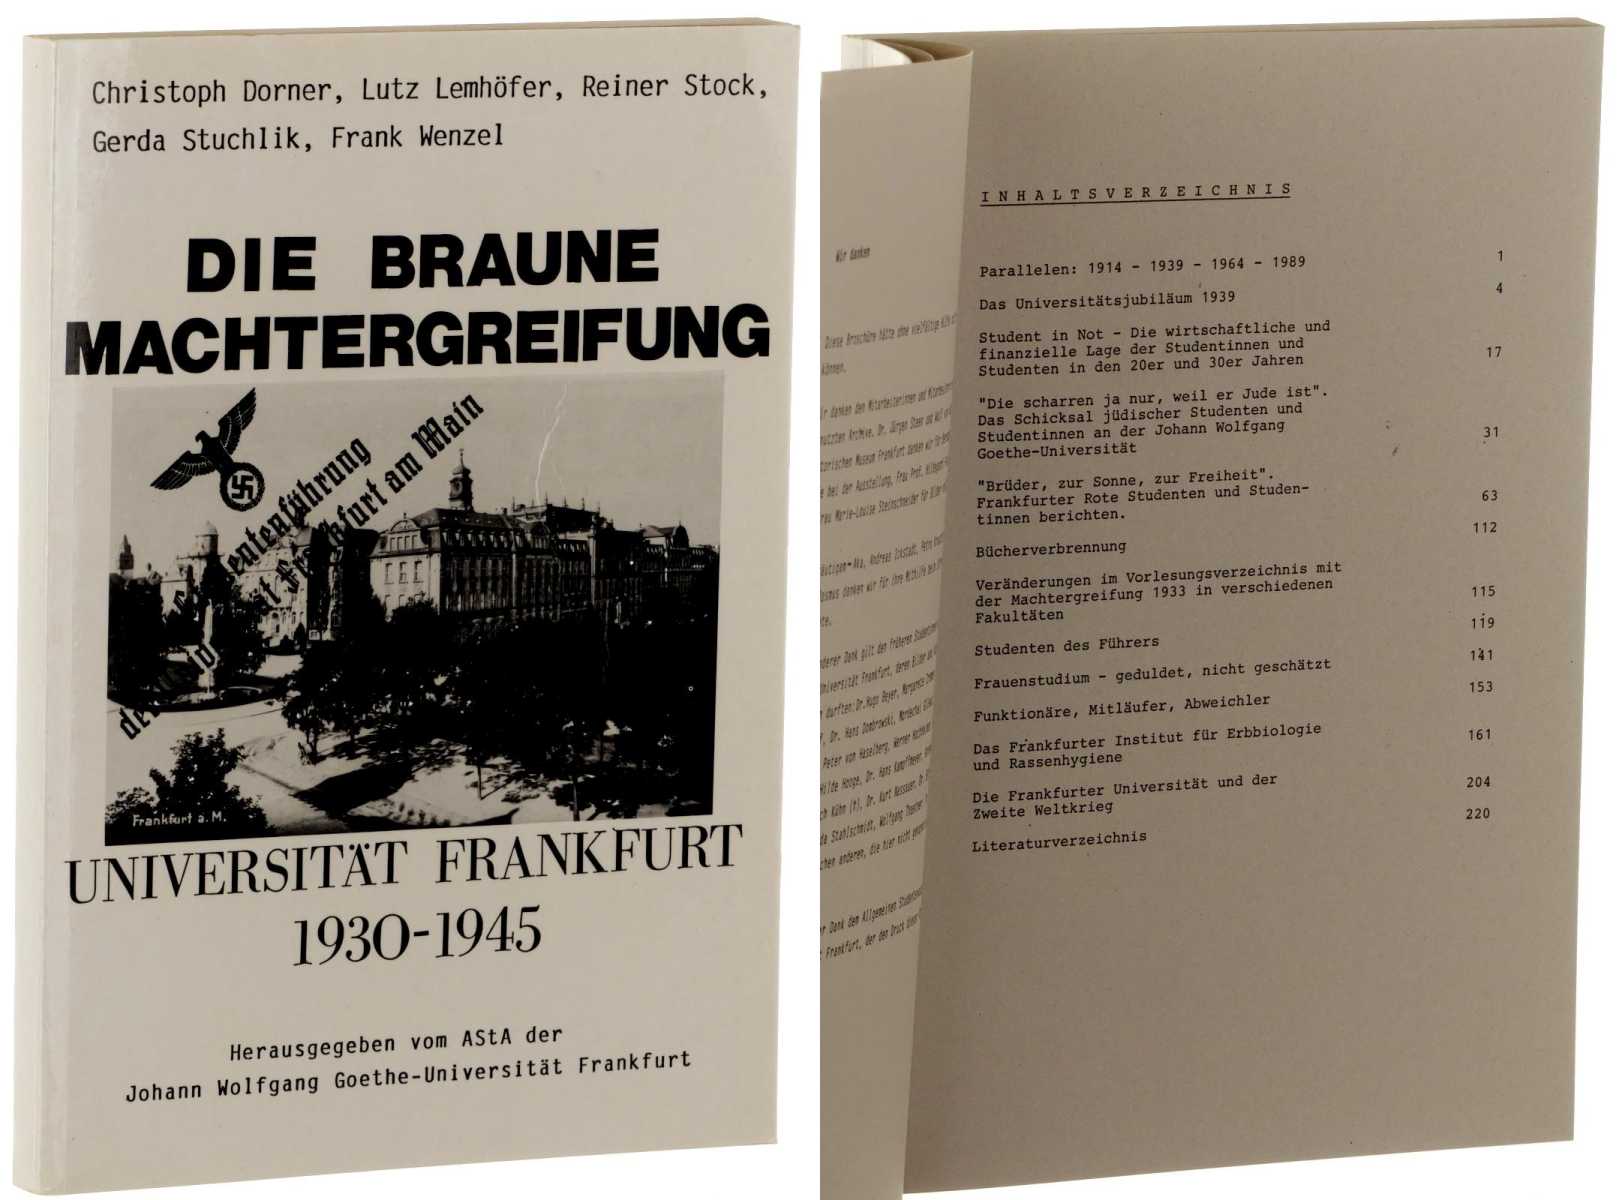 Dorner, Christoph/ Lutz Lemhöfer, Reiner Stock u.a.:  Die braune Machtergreifung. Universität Frankfurt 1930 - 1945. 